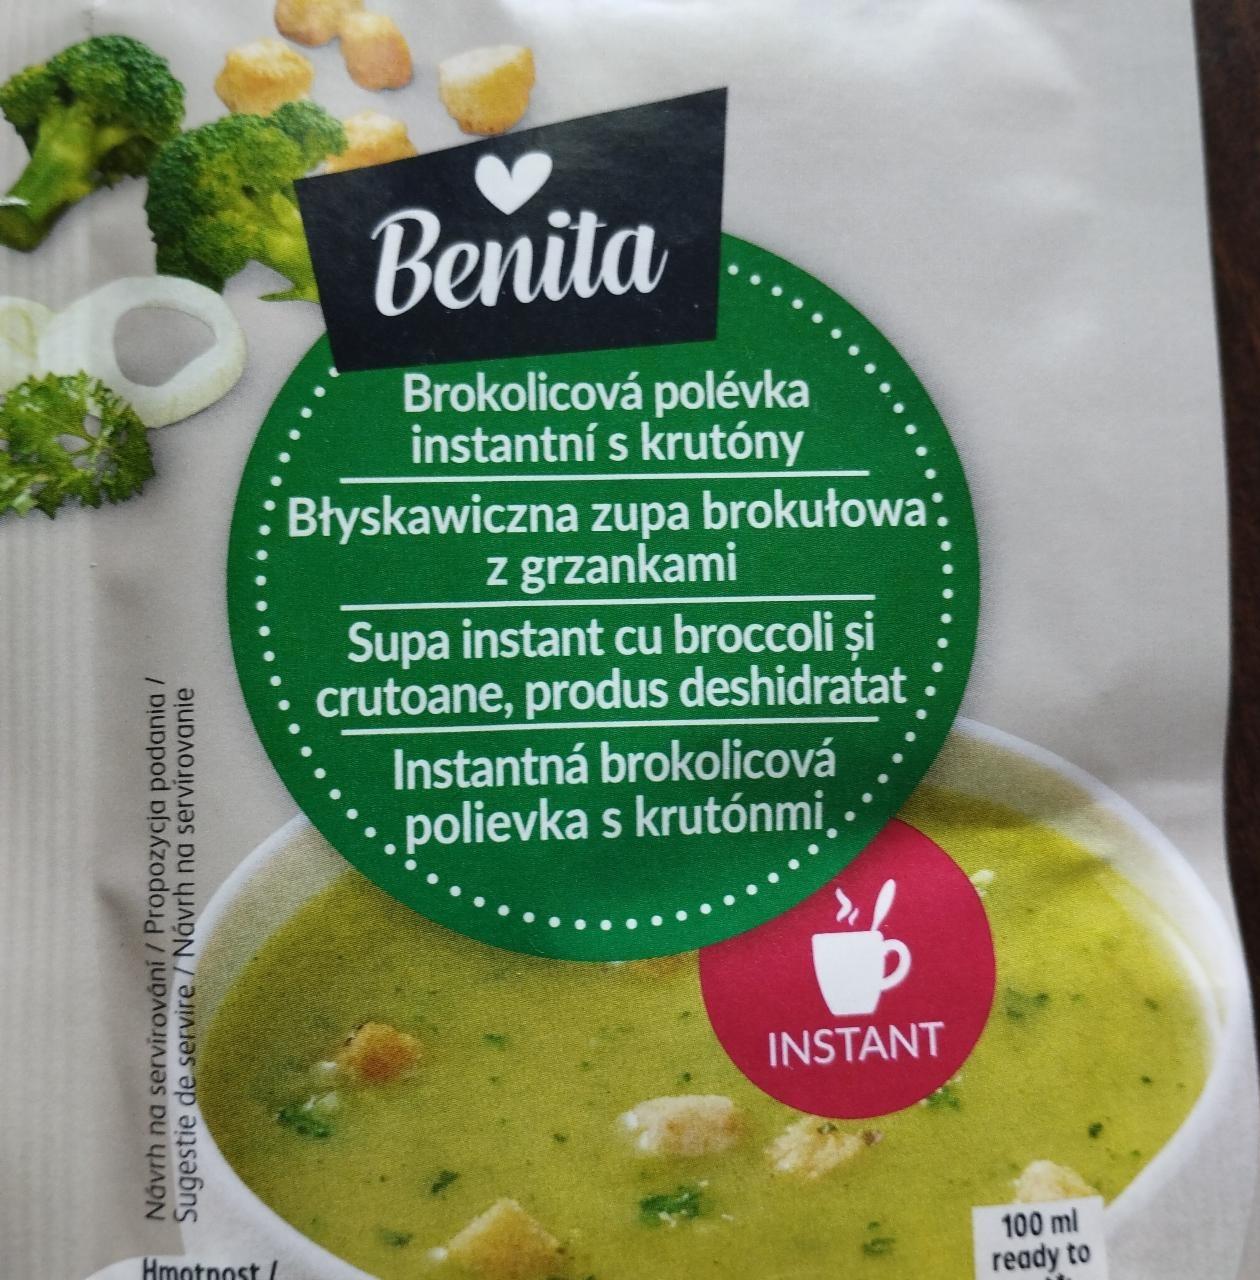 Fotografie - Instantná brokolicová polievka s krutónmi Benita